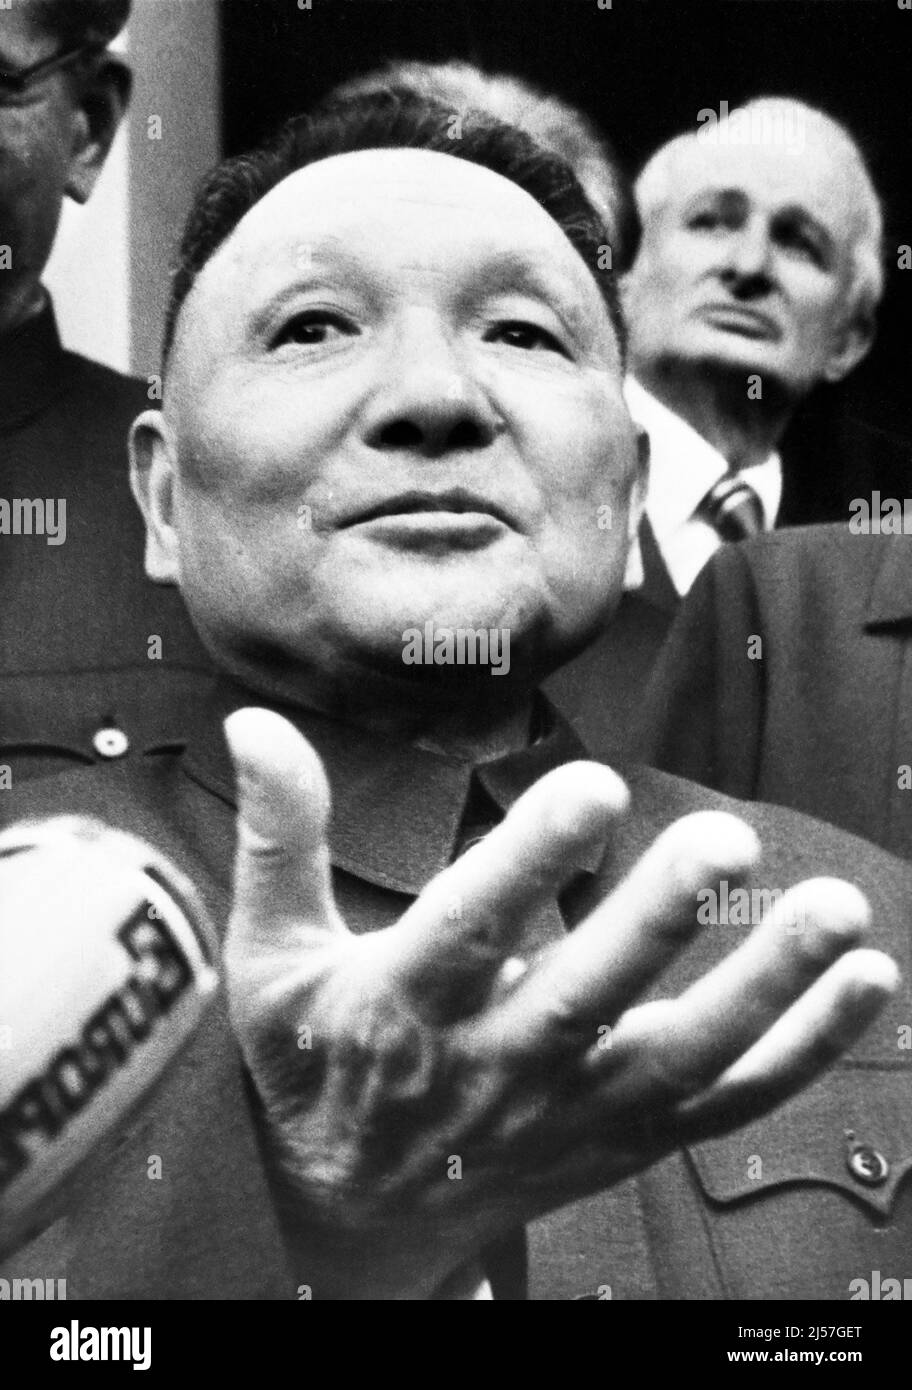 China: Deng Xiaoping (22. August 1904 – 19. Februar 1997) hier am 6.. April 1976. Deng Xiaoping war ein chinesischer Politiker, Staatsmann, Theoretiker und Diplomat. Als Führer der Kommunistischen Partei Chinas war Deng ein Reformer, der China zu einer Marktwirtschaft führte. Obwohl Deng nie als Staatschef, Regierungschef oder Generalsekretär der Kommunistischen Partei Chinas (historisch die höchste Position im kommunistischen China) im Amt war, diente er dennoch von 1978 bis 1992 als oberster Führer der Volksrepublik China. Stockfoto